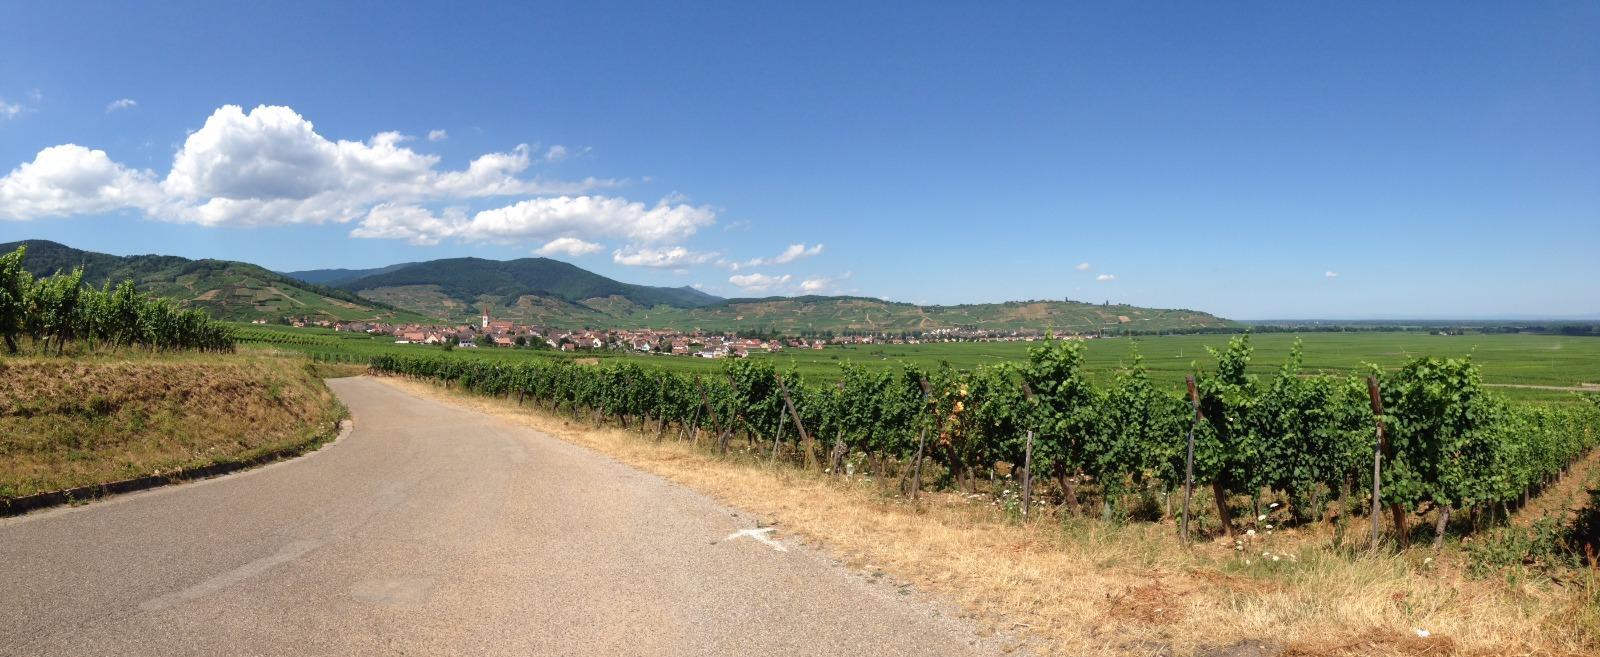 Le vignoble alsacien, Domaine Sibler près de Colmar